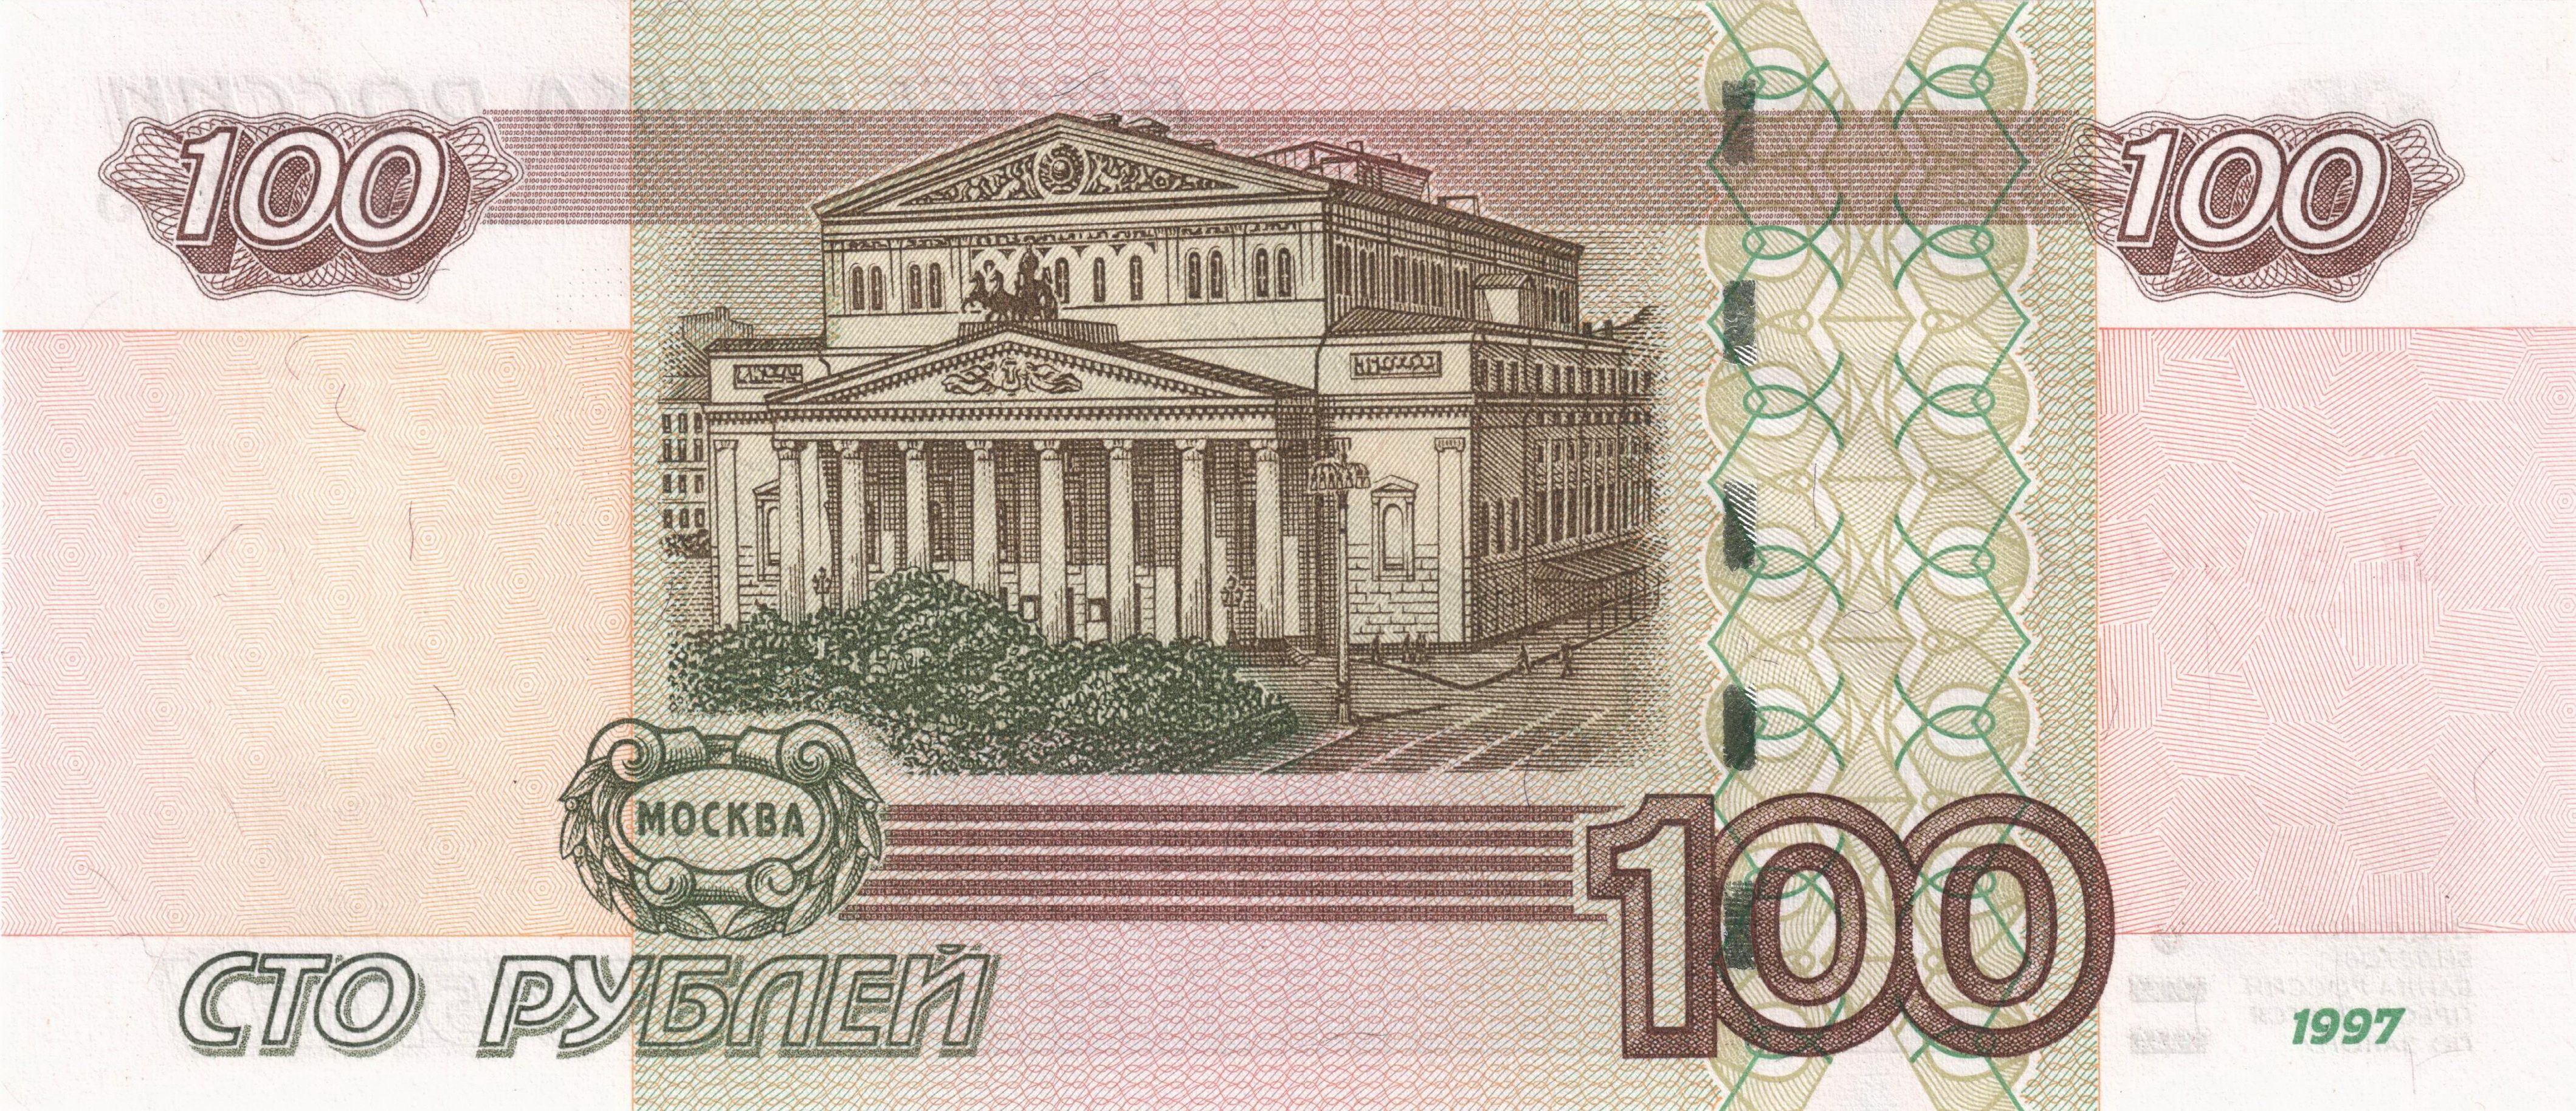 russian currency | Money Wiki - Russian Money | Russian | Pinterest ...